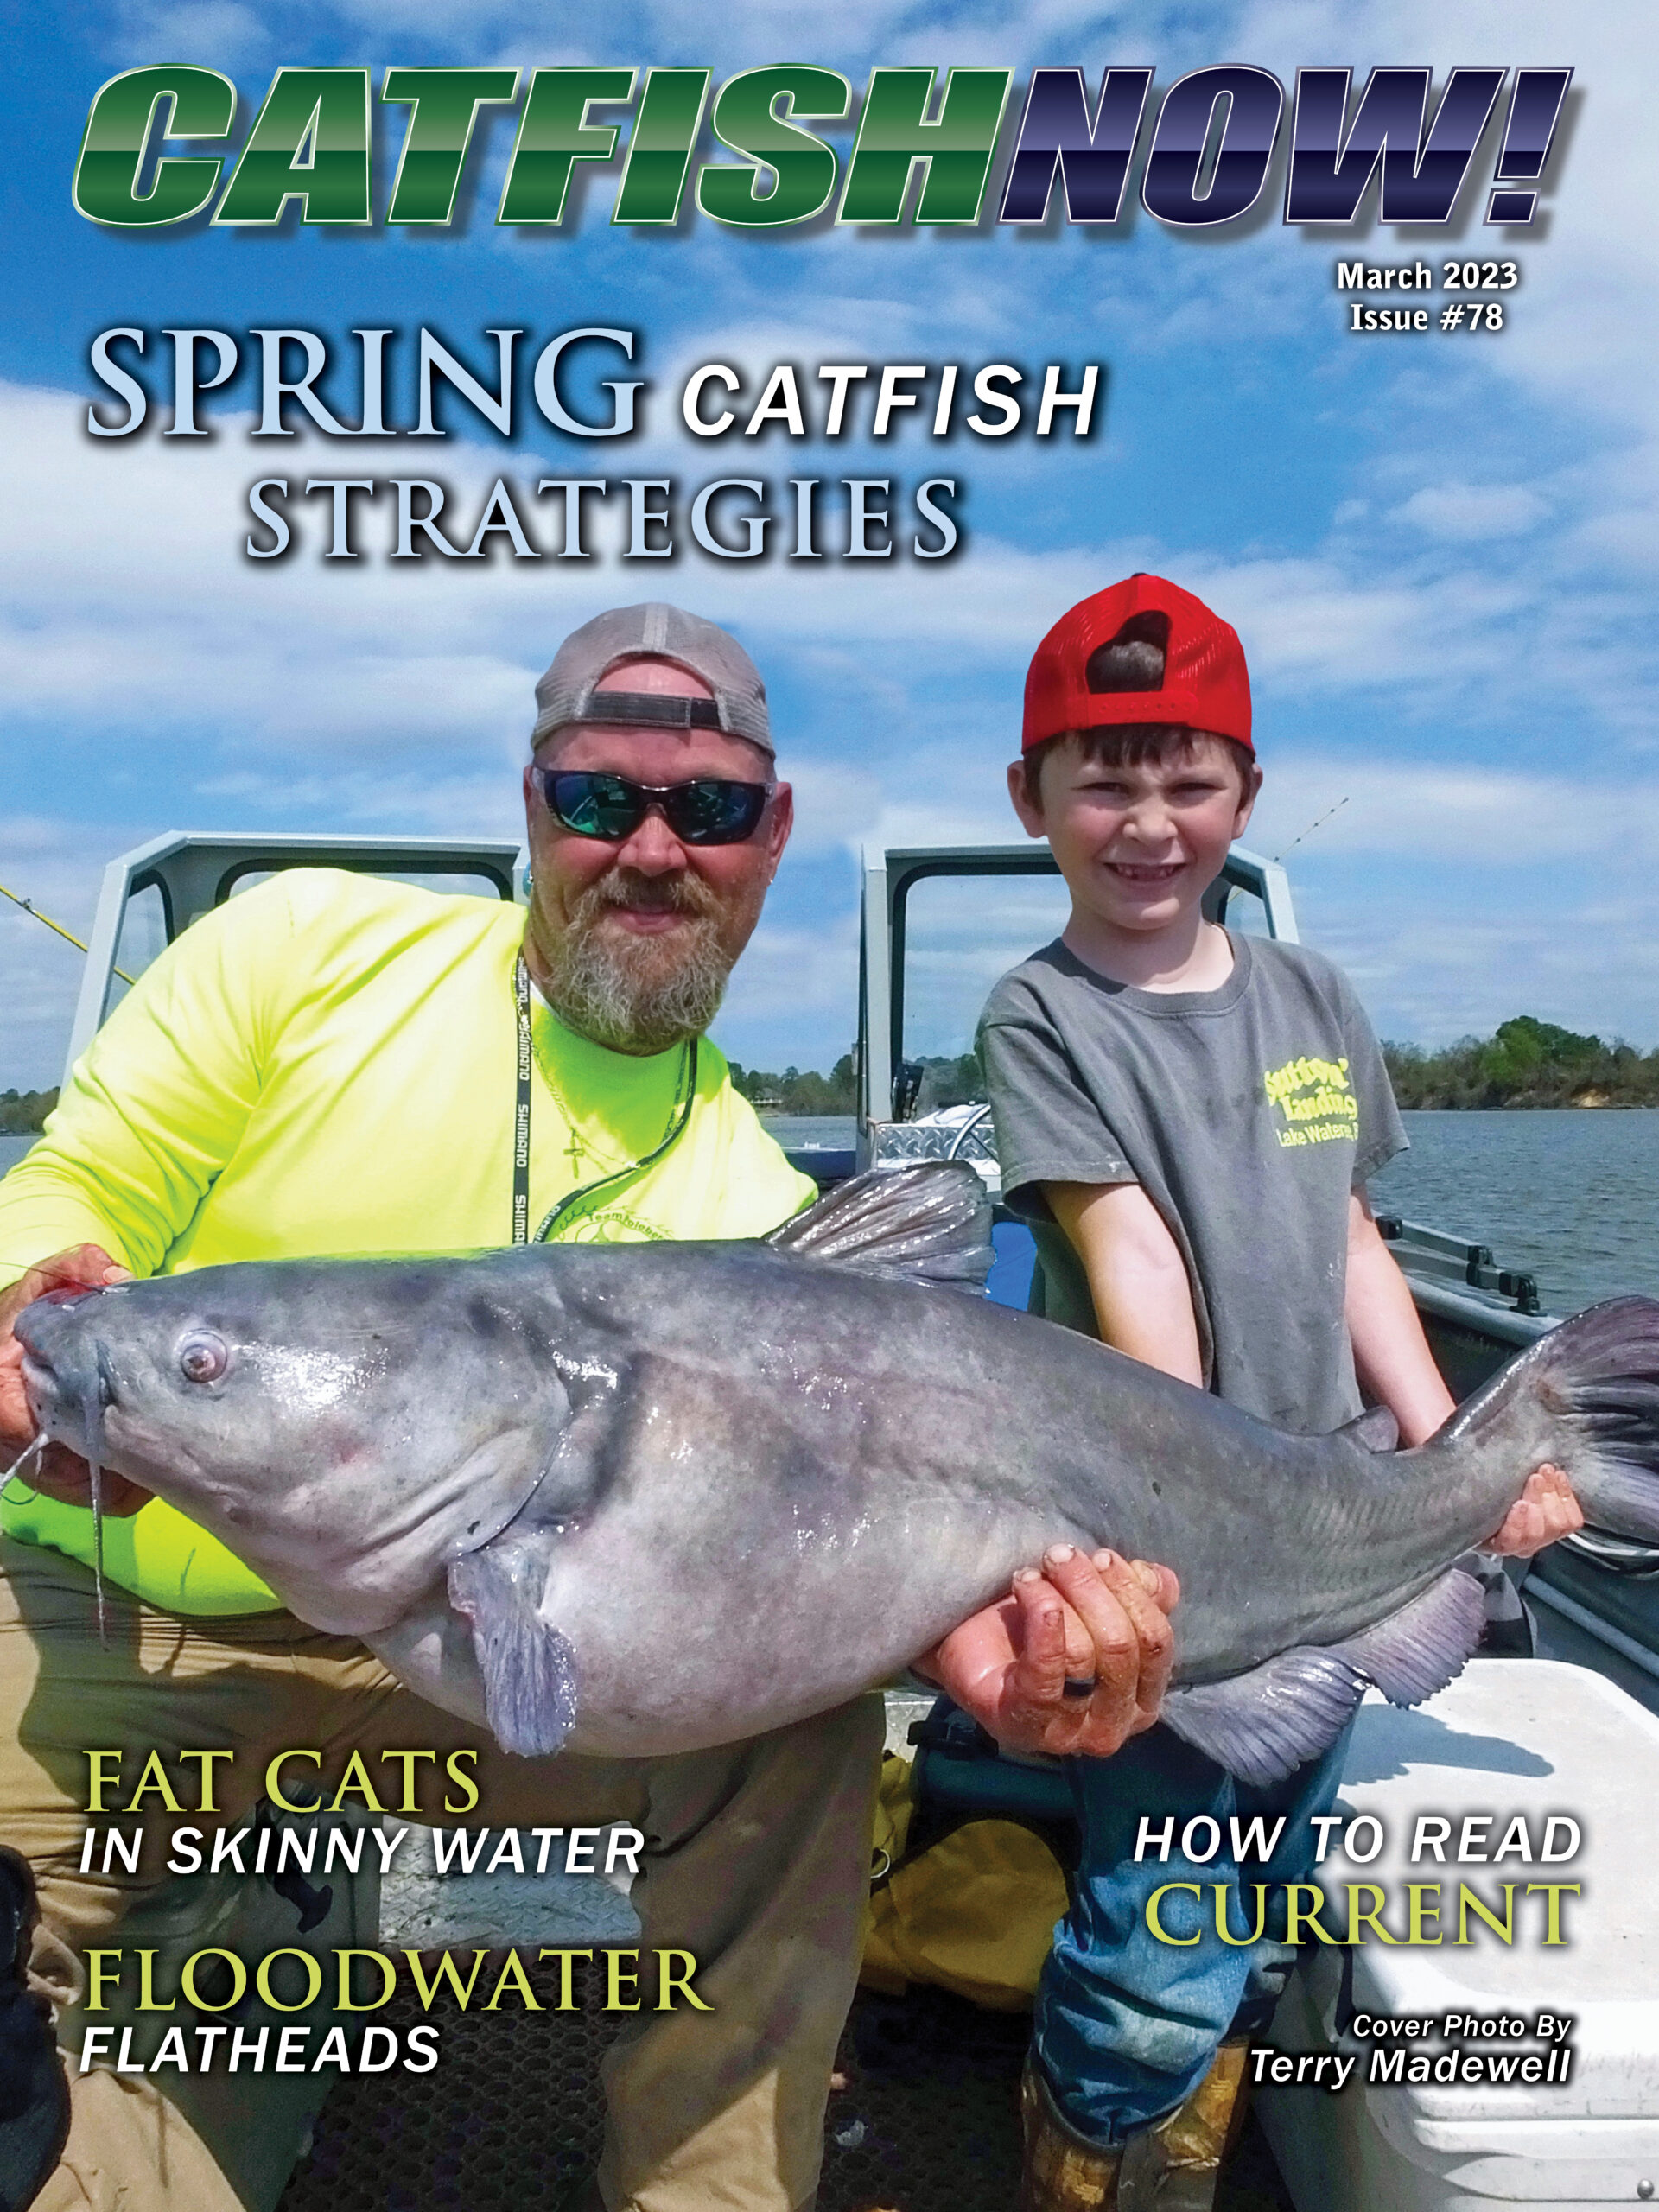 CatfishNOW  Online Only Catfishing Magazine